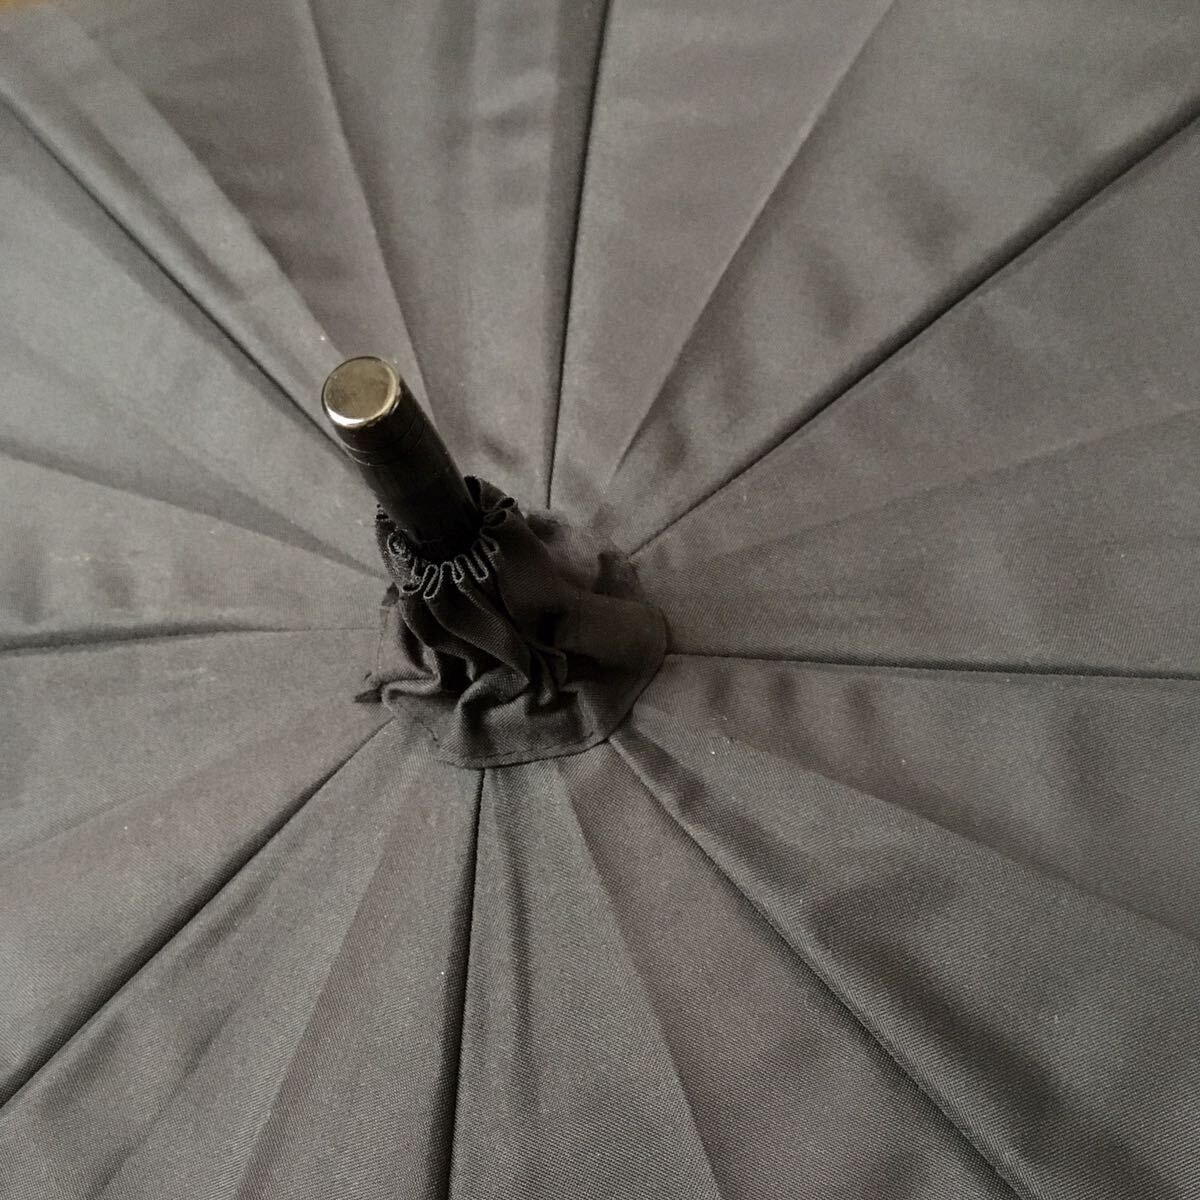  samba задний 100 совершенно затемнение зонт от солнца длинный зонт комбинированный M черный бежевый сделано в Японии 